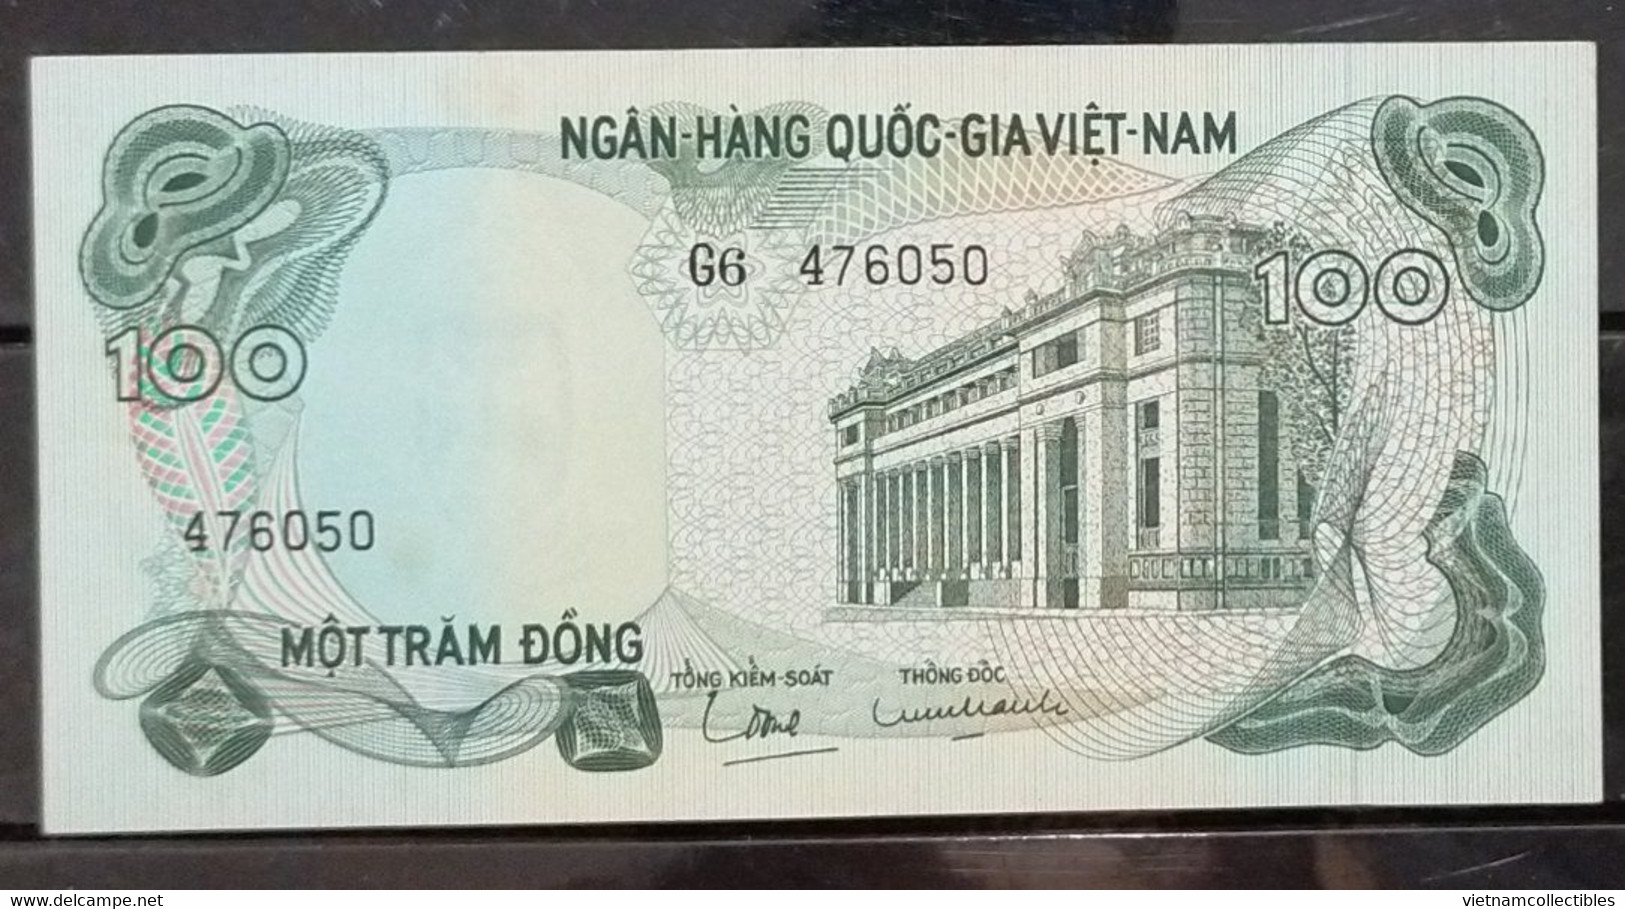 South Vietnam Viet Nam 100 Dong UNC Banknote Note 1970 - Pick # 26 - Viêt-Nam